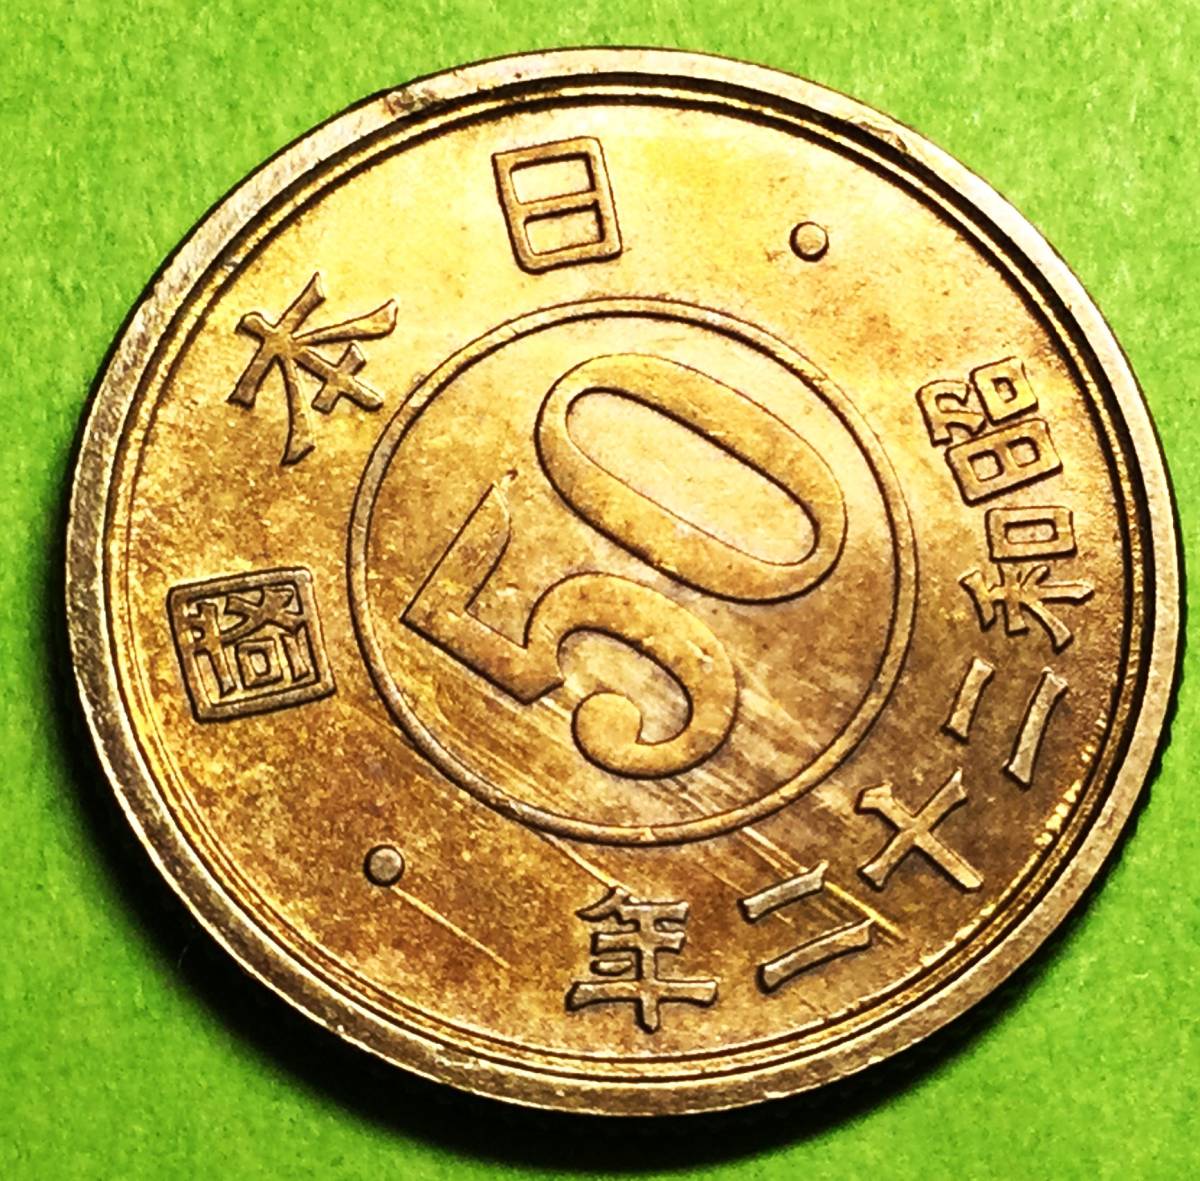 M437 【光線入り】 昭和22年 小型50銭黄銅貨の画像1